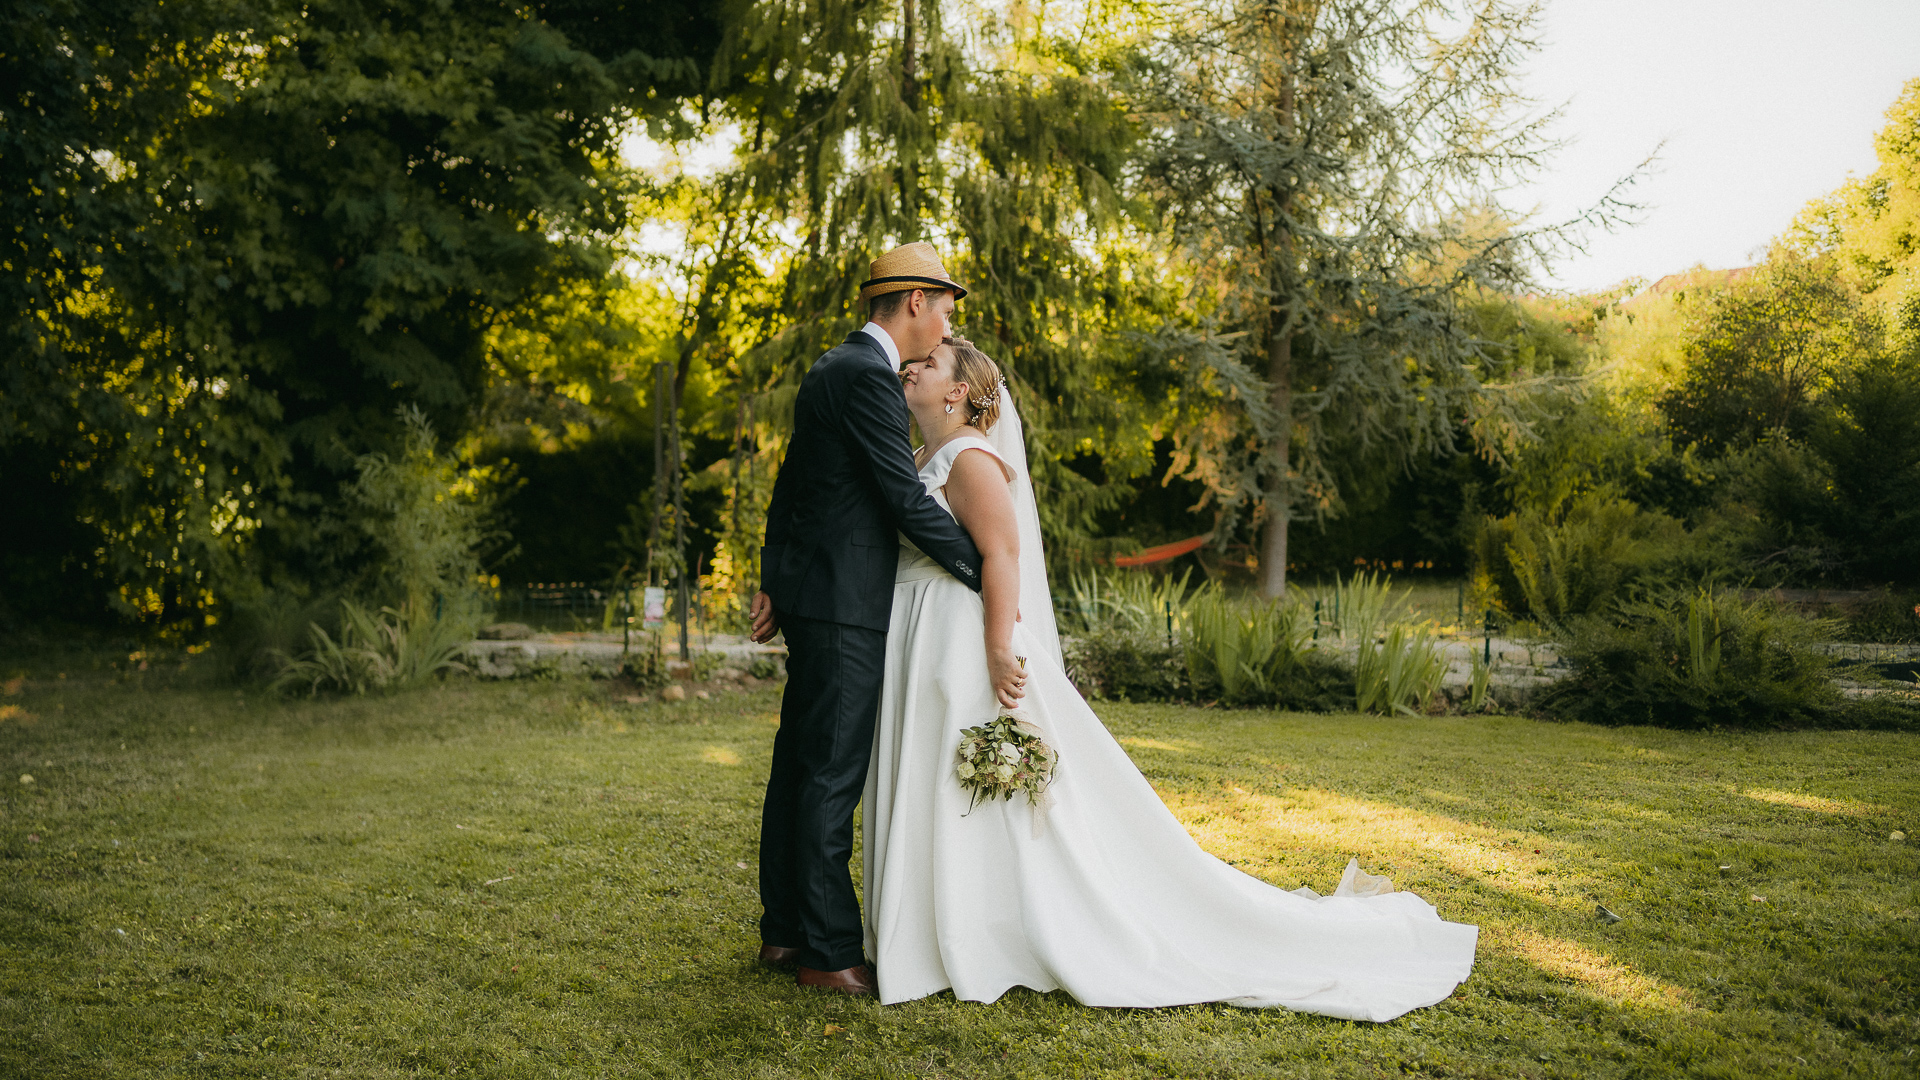 Mots-clés : mariagedescription : Un couple s'embrassant dans un jardin capturé par un photographe de mariage.